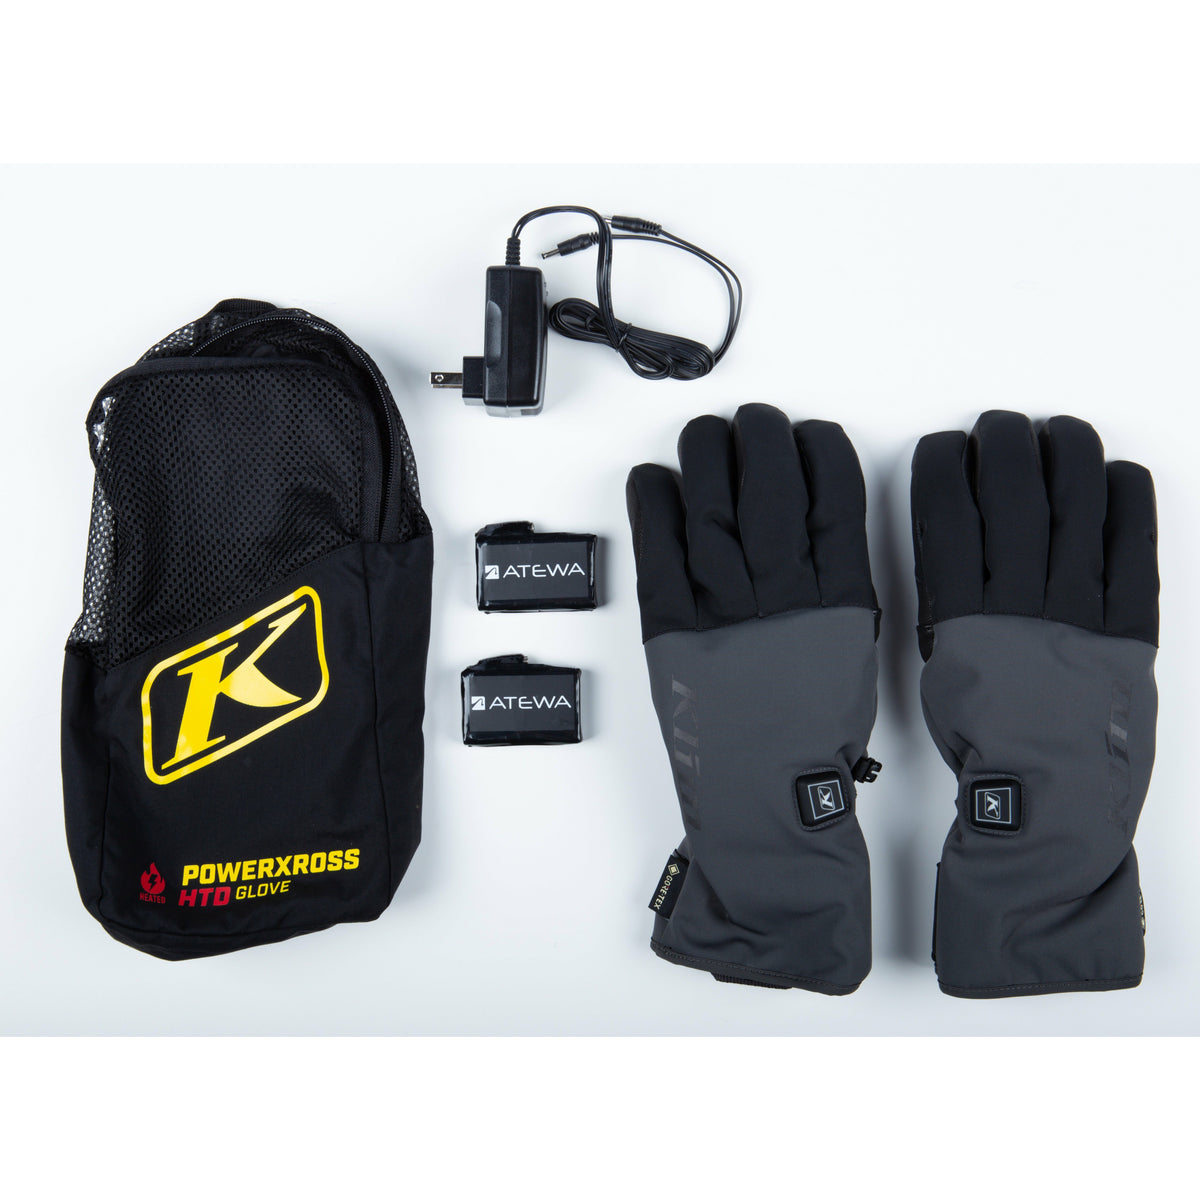 Klim PowerXross HTD Glove